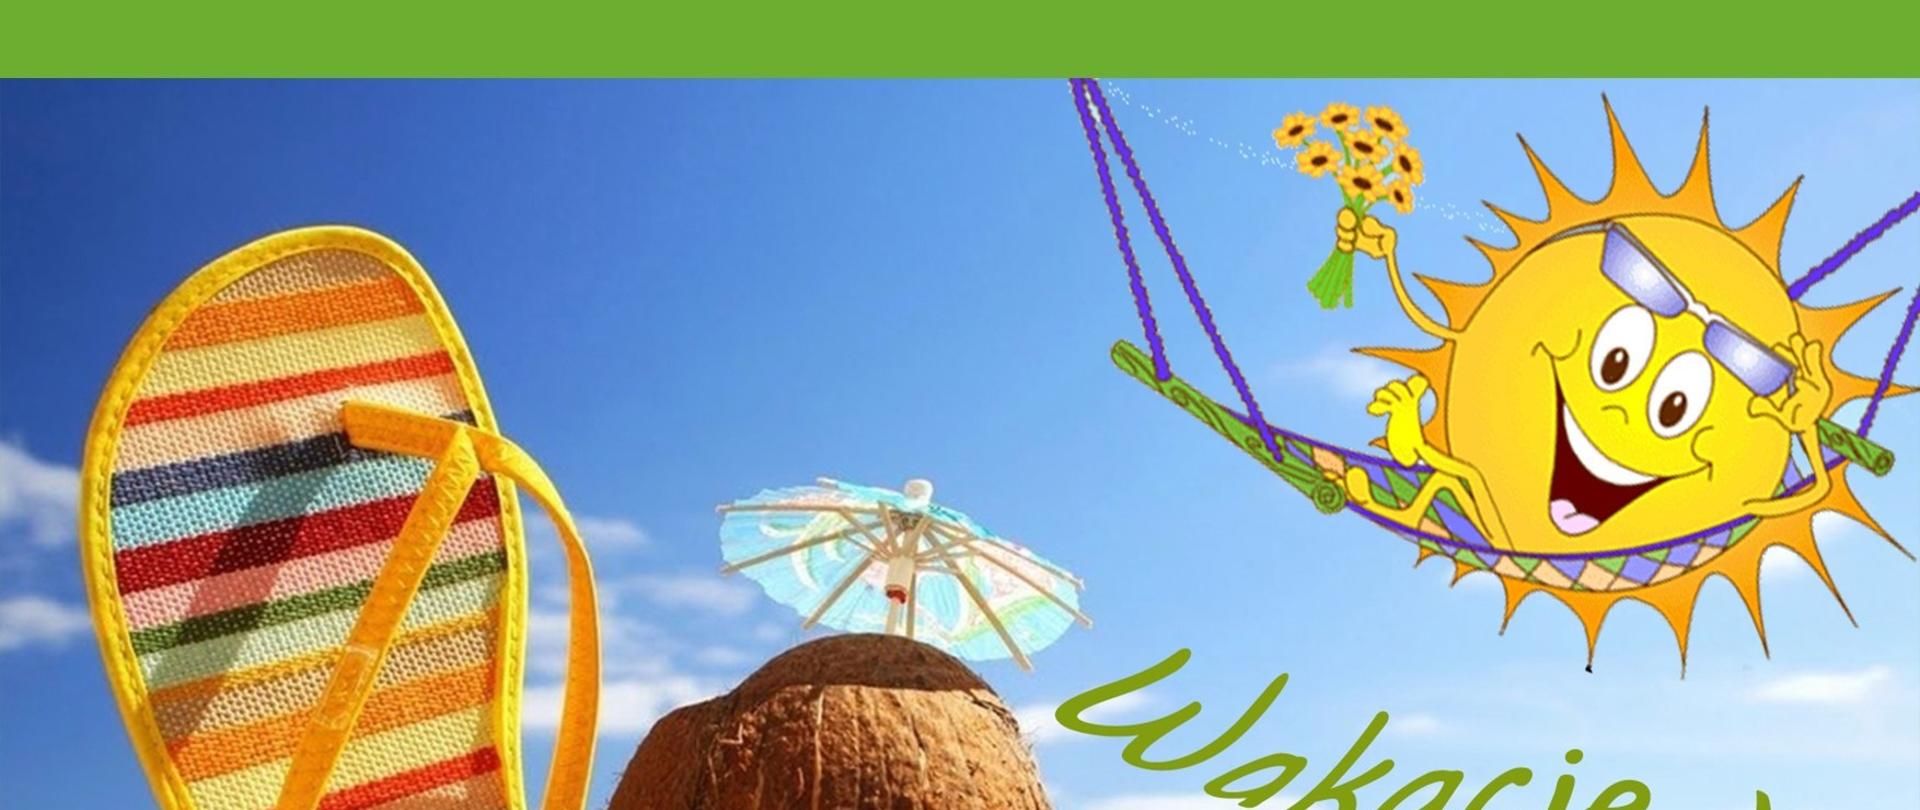  zdjęcie plaży: piasek- w tle morze . na pierwszym planie w piasek wbity kapeć plażowy damski obok leżące okulary za okularami kokos, w kokos wbita parasolka od koktajli, w prawym górnym rogu na hamaku narysowane jest uśmiechnięte słońce z kwiatami leżące na hamaku